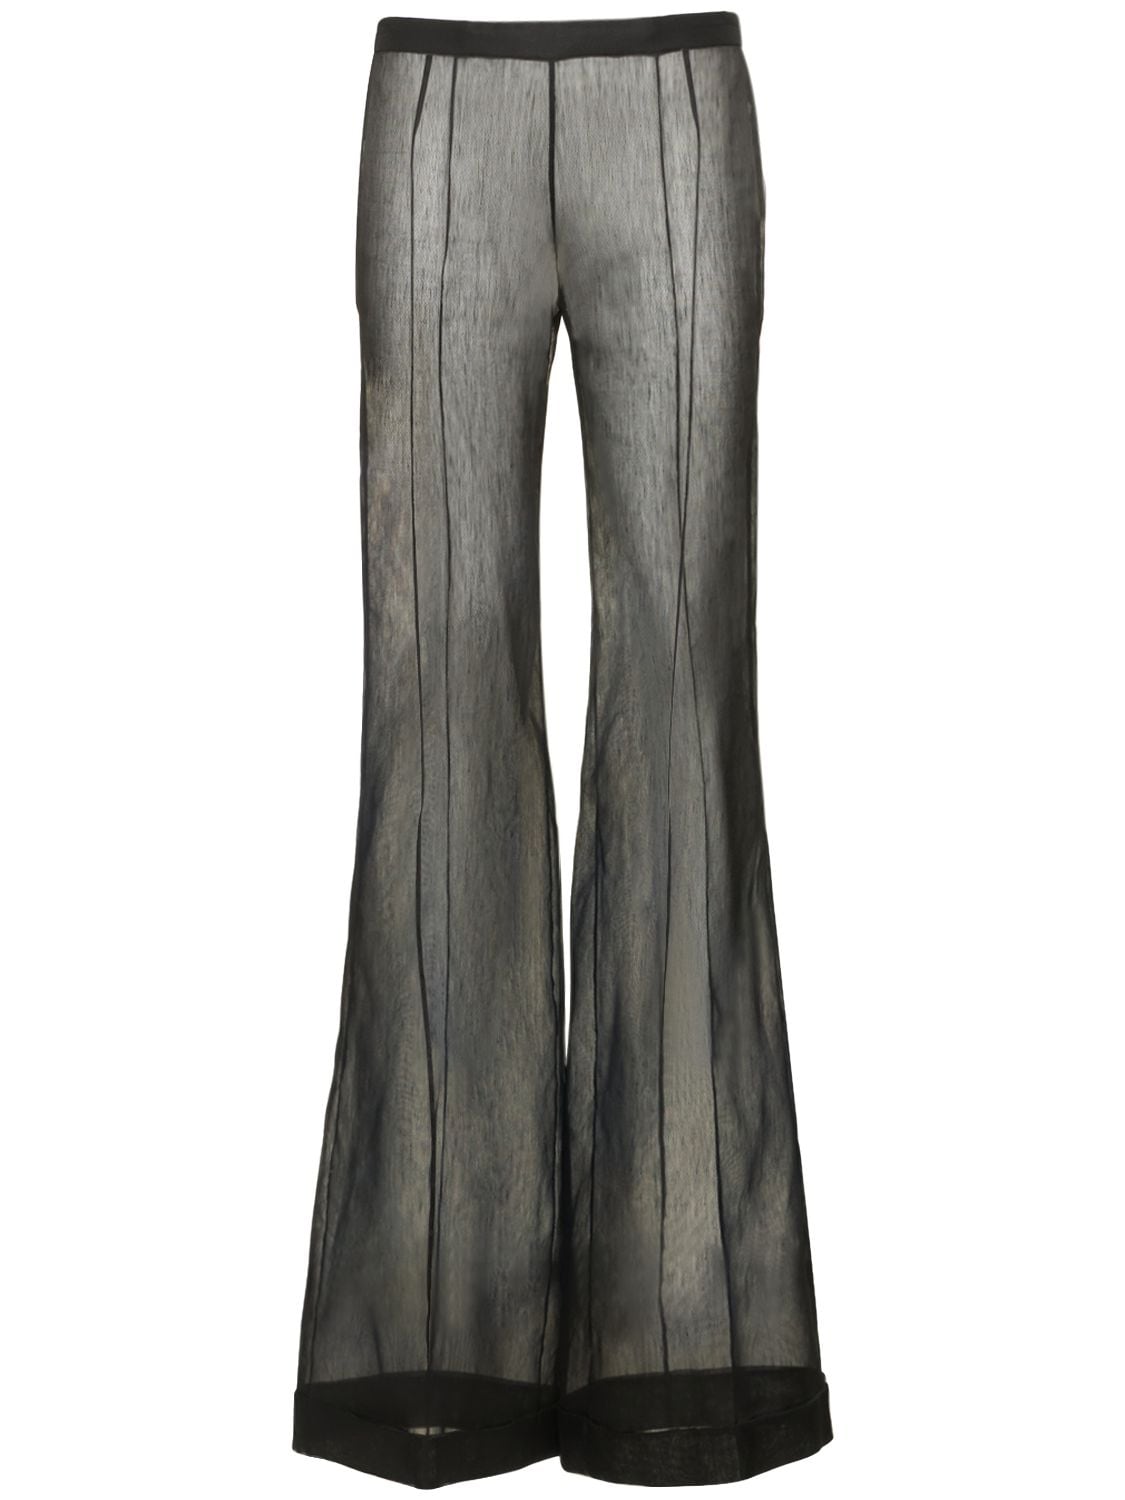 Pantalon Taille Basse En Gaze De Soie Transparente - DEL CORE - Modalova